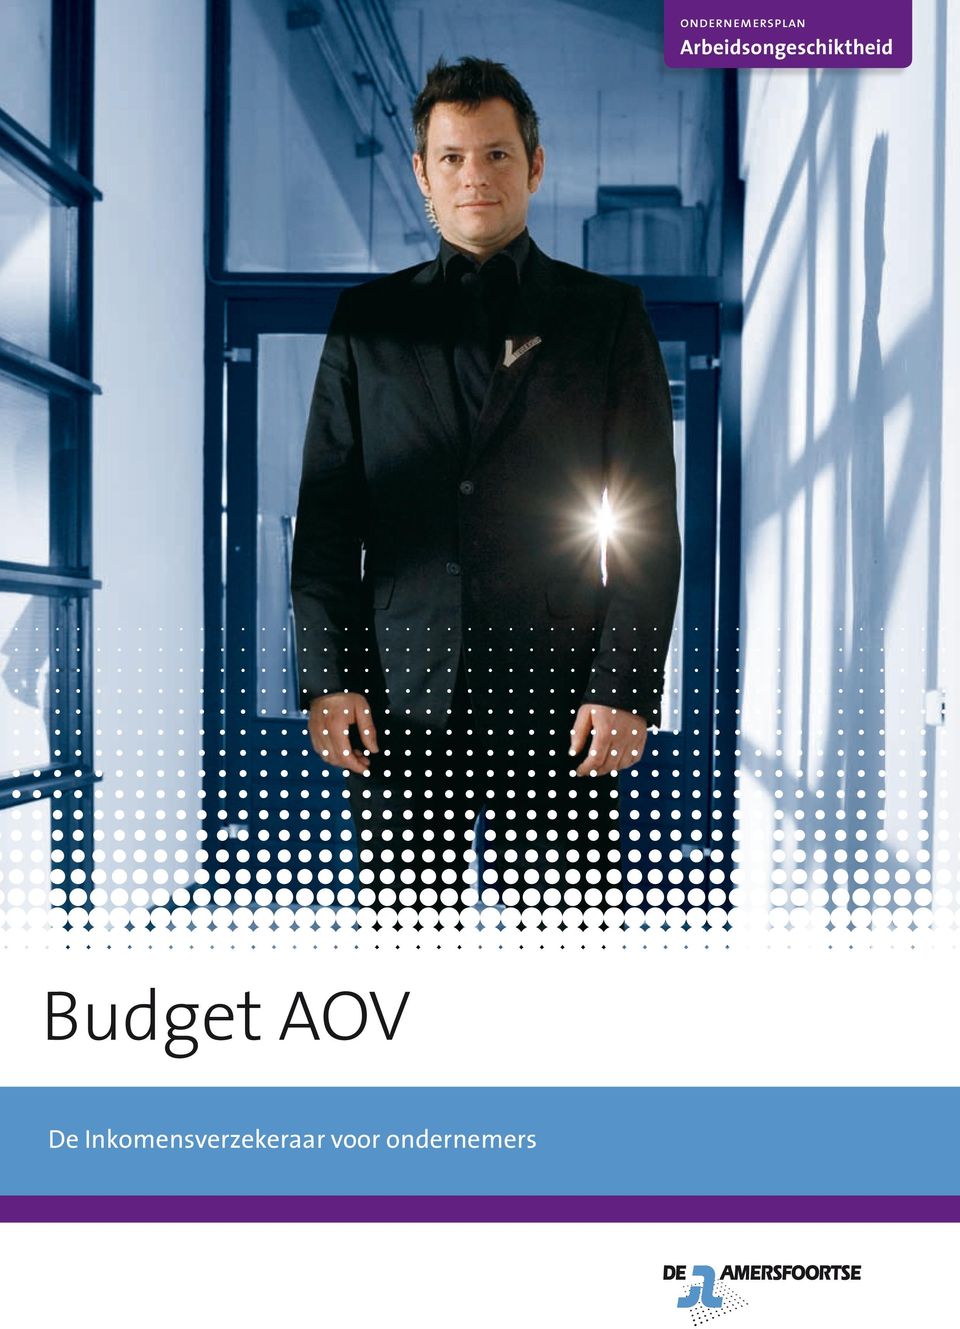 Budget AOV De